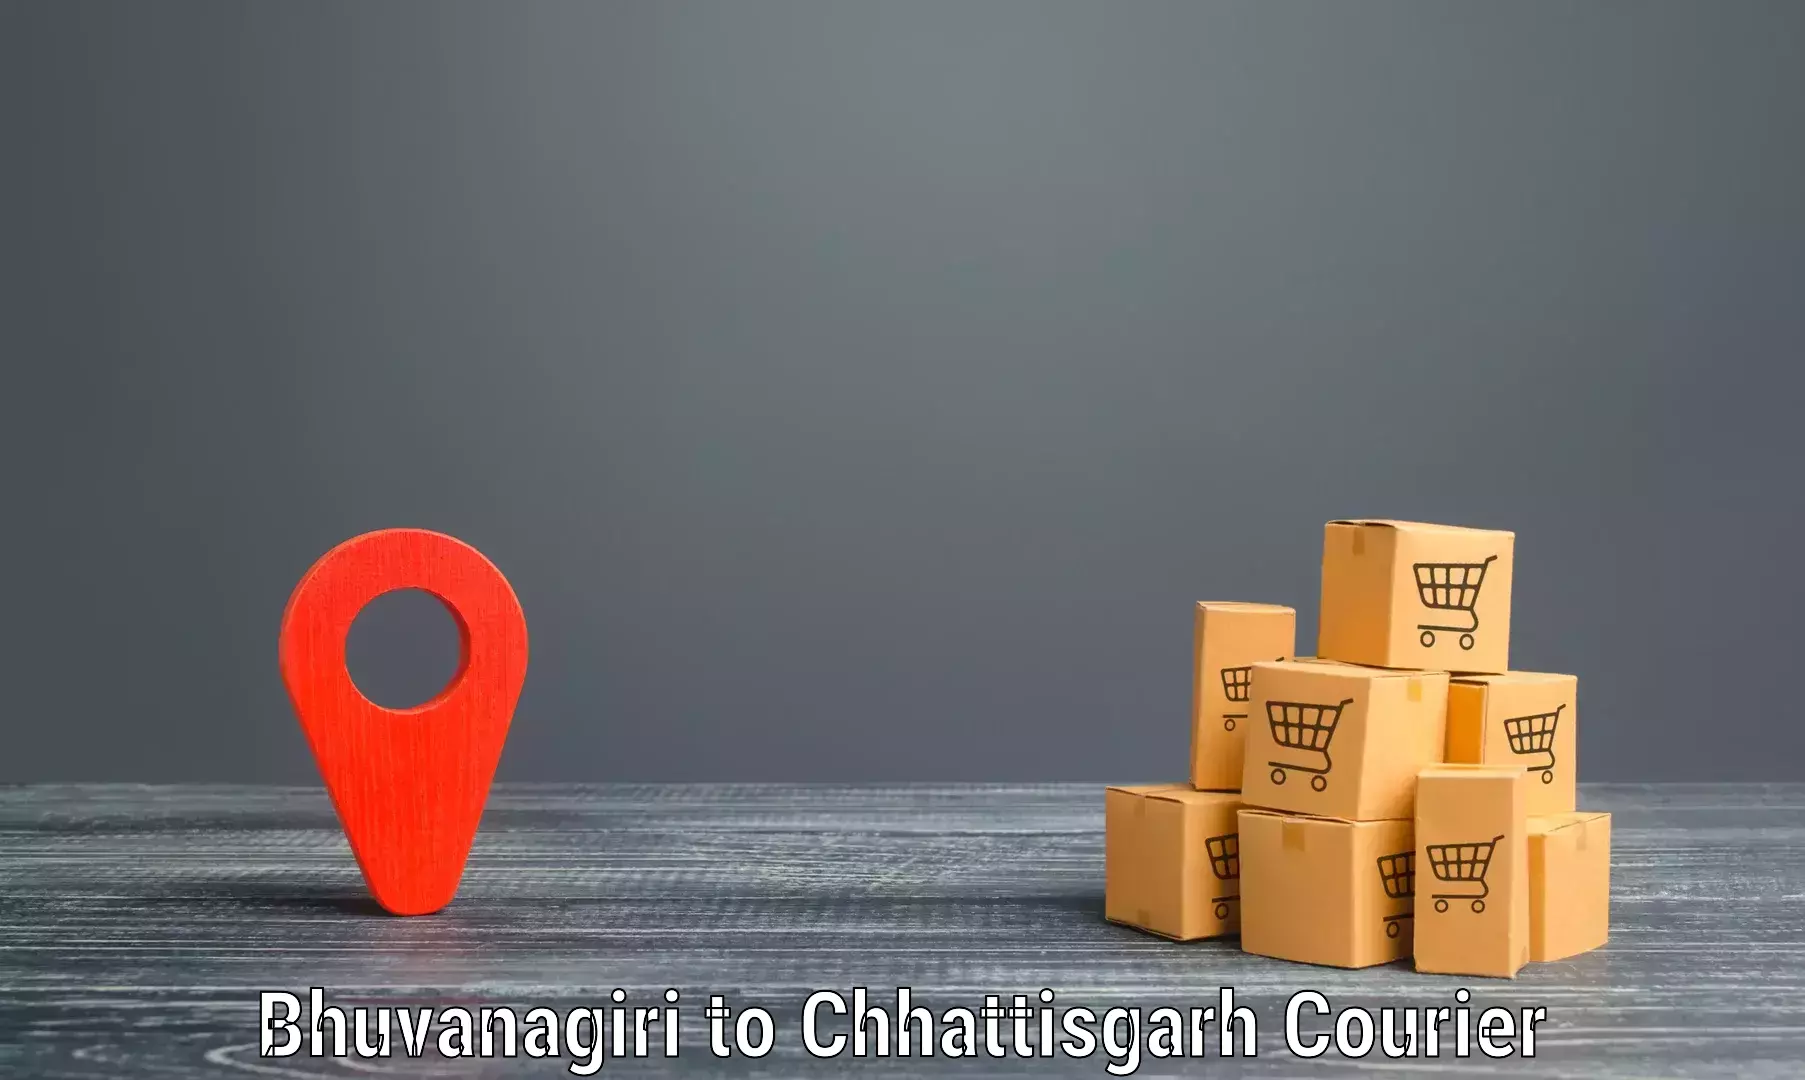 State-of-the-art courier technology Bhuvanagiri to Pandariya